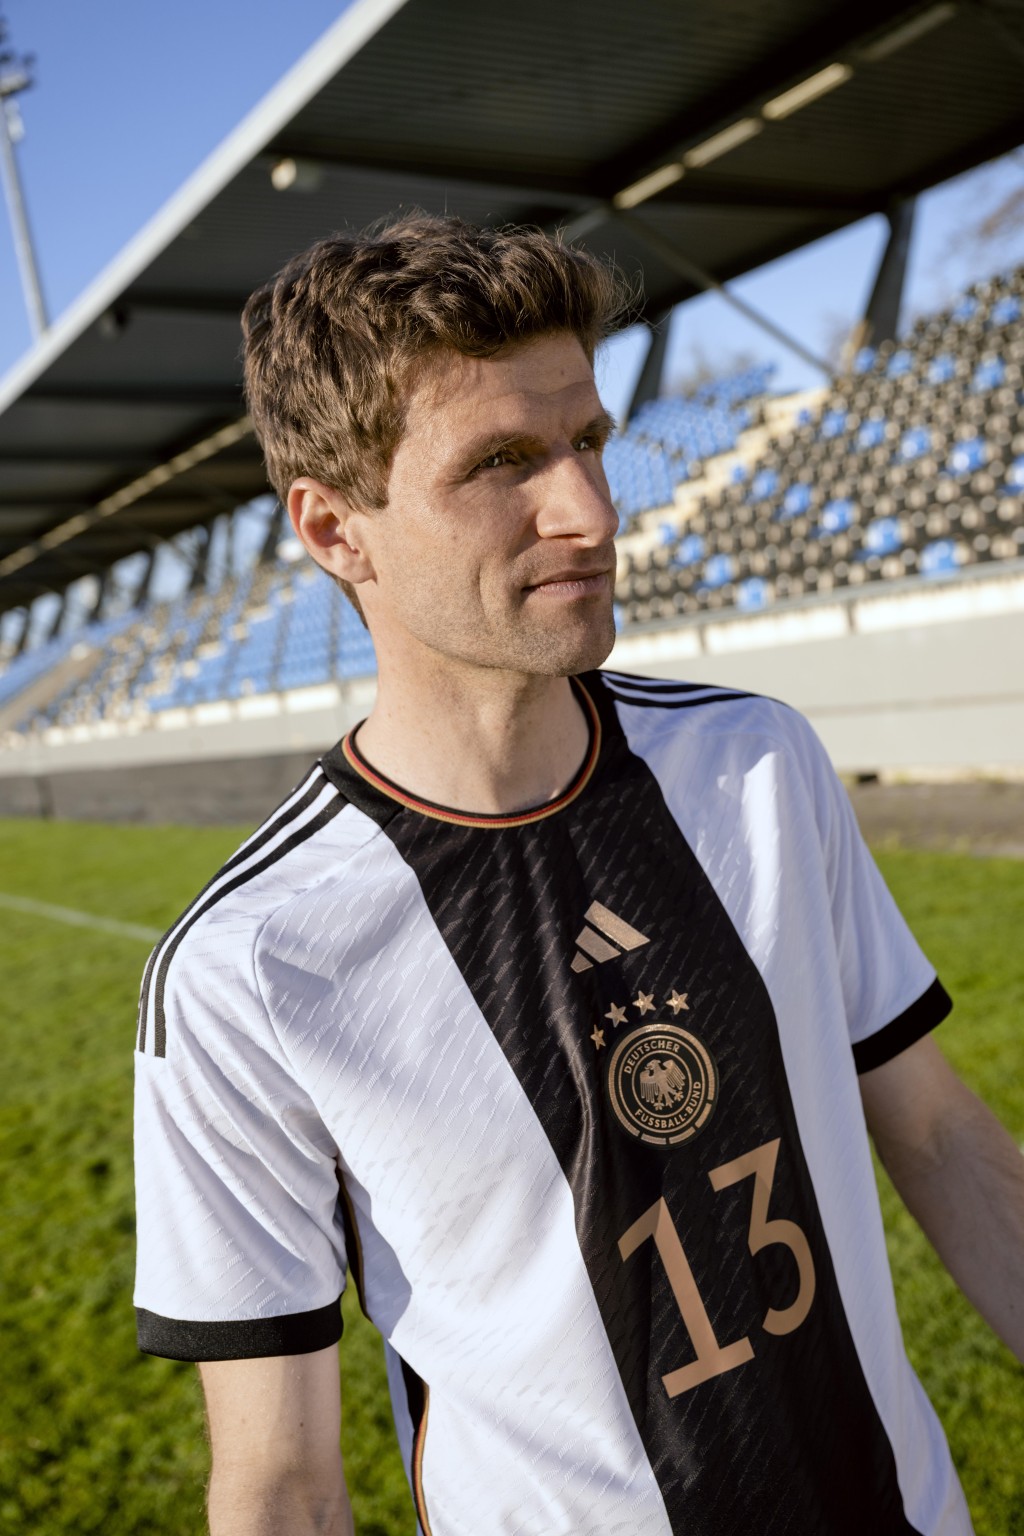 ９）德國 / 主場球衣： 德國主場球衣以黑白作主調，胸前以熱轉印技術製成的隊徽以金色細節修飾，中間綴以條紋圖案，該設計靈感啟發自德國首件球衣，演繹出德國的運動精神與簡約美學，顏色亦容易襯搭。Adidas圖片